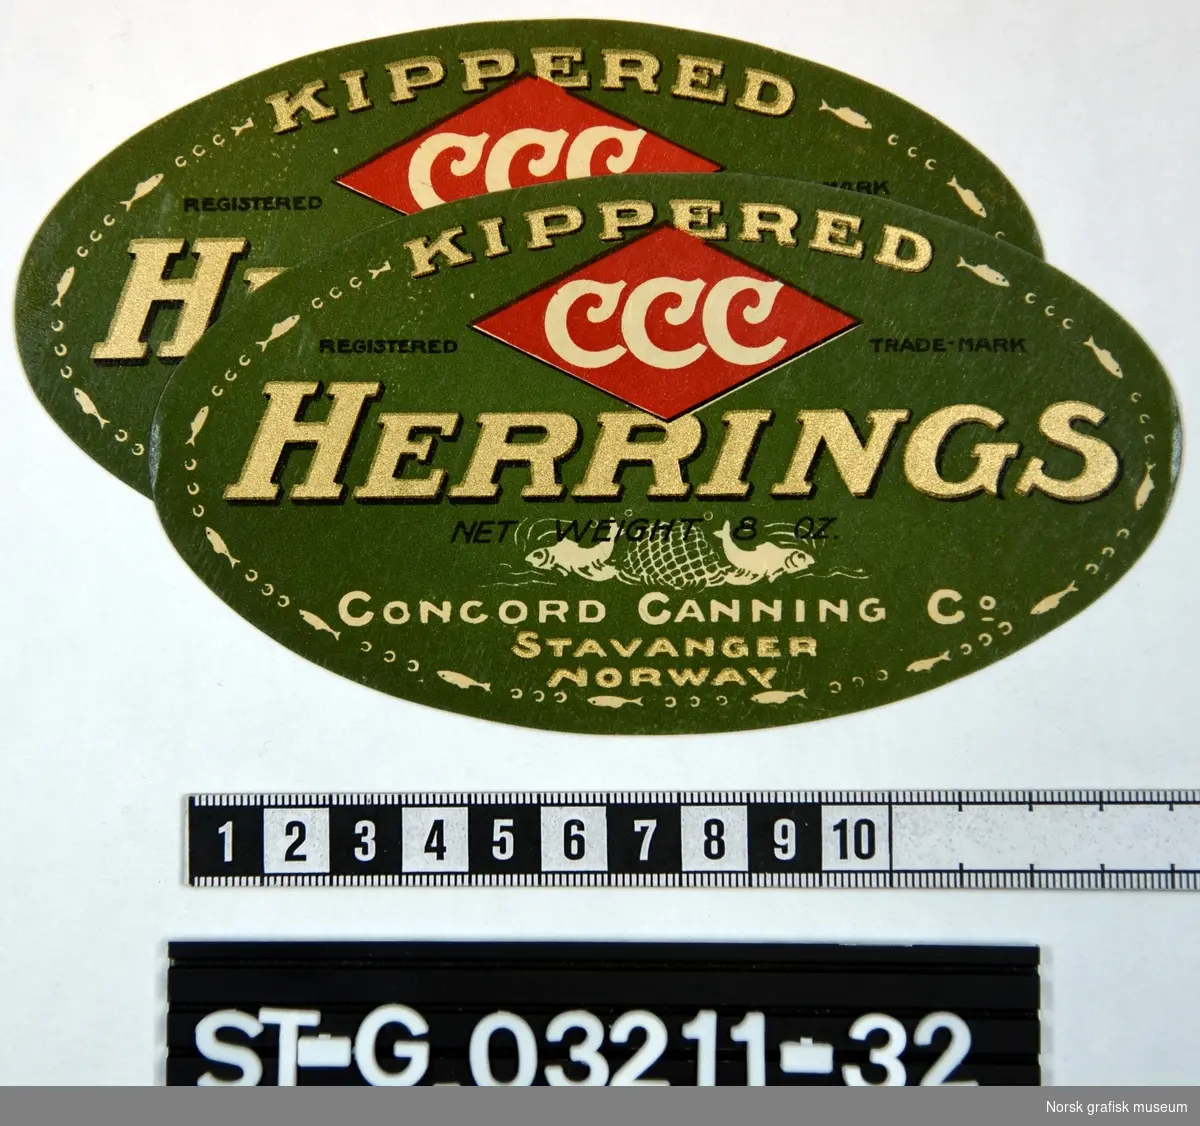 To stk. ovale etiketter i grønt, rødt, hvitt og gull. Ytterkanten er omkranset av en bord laget av fisk og bokstavene (varenavnet) CCC. 

"Kippered Herrings"